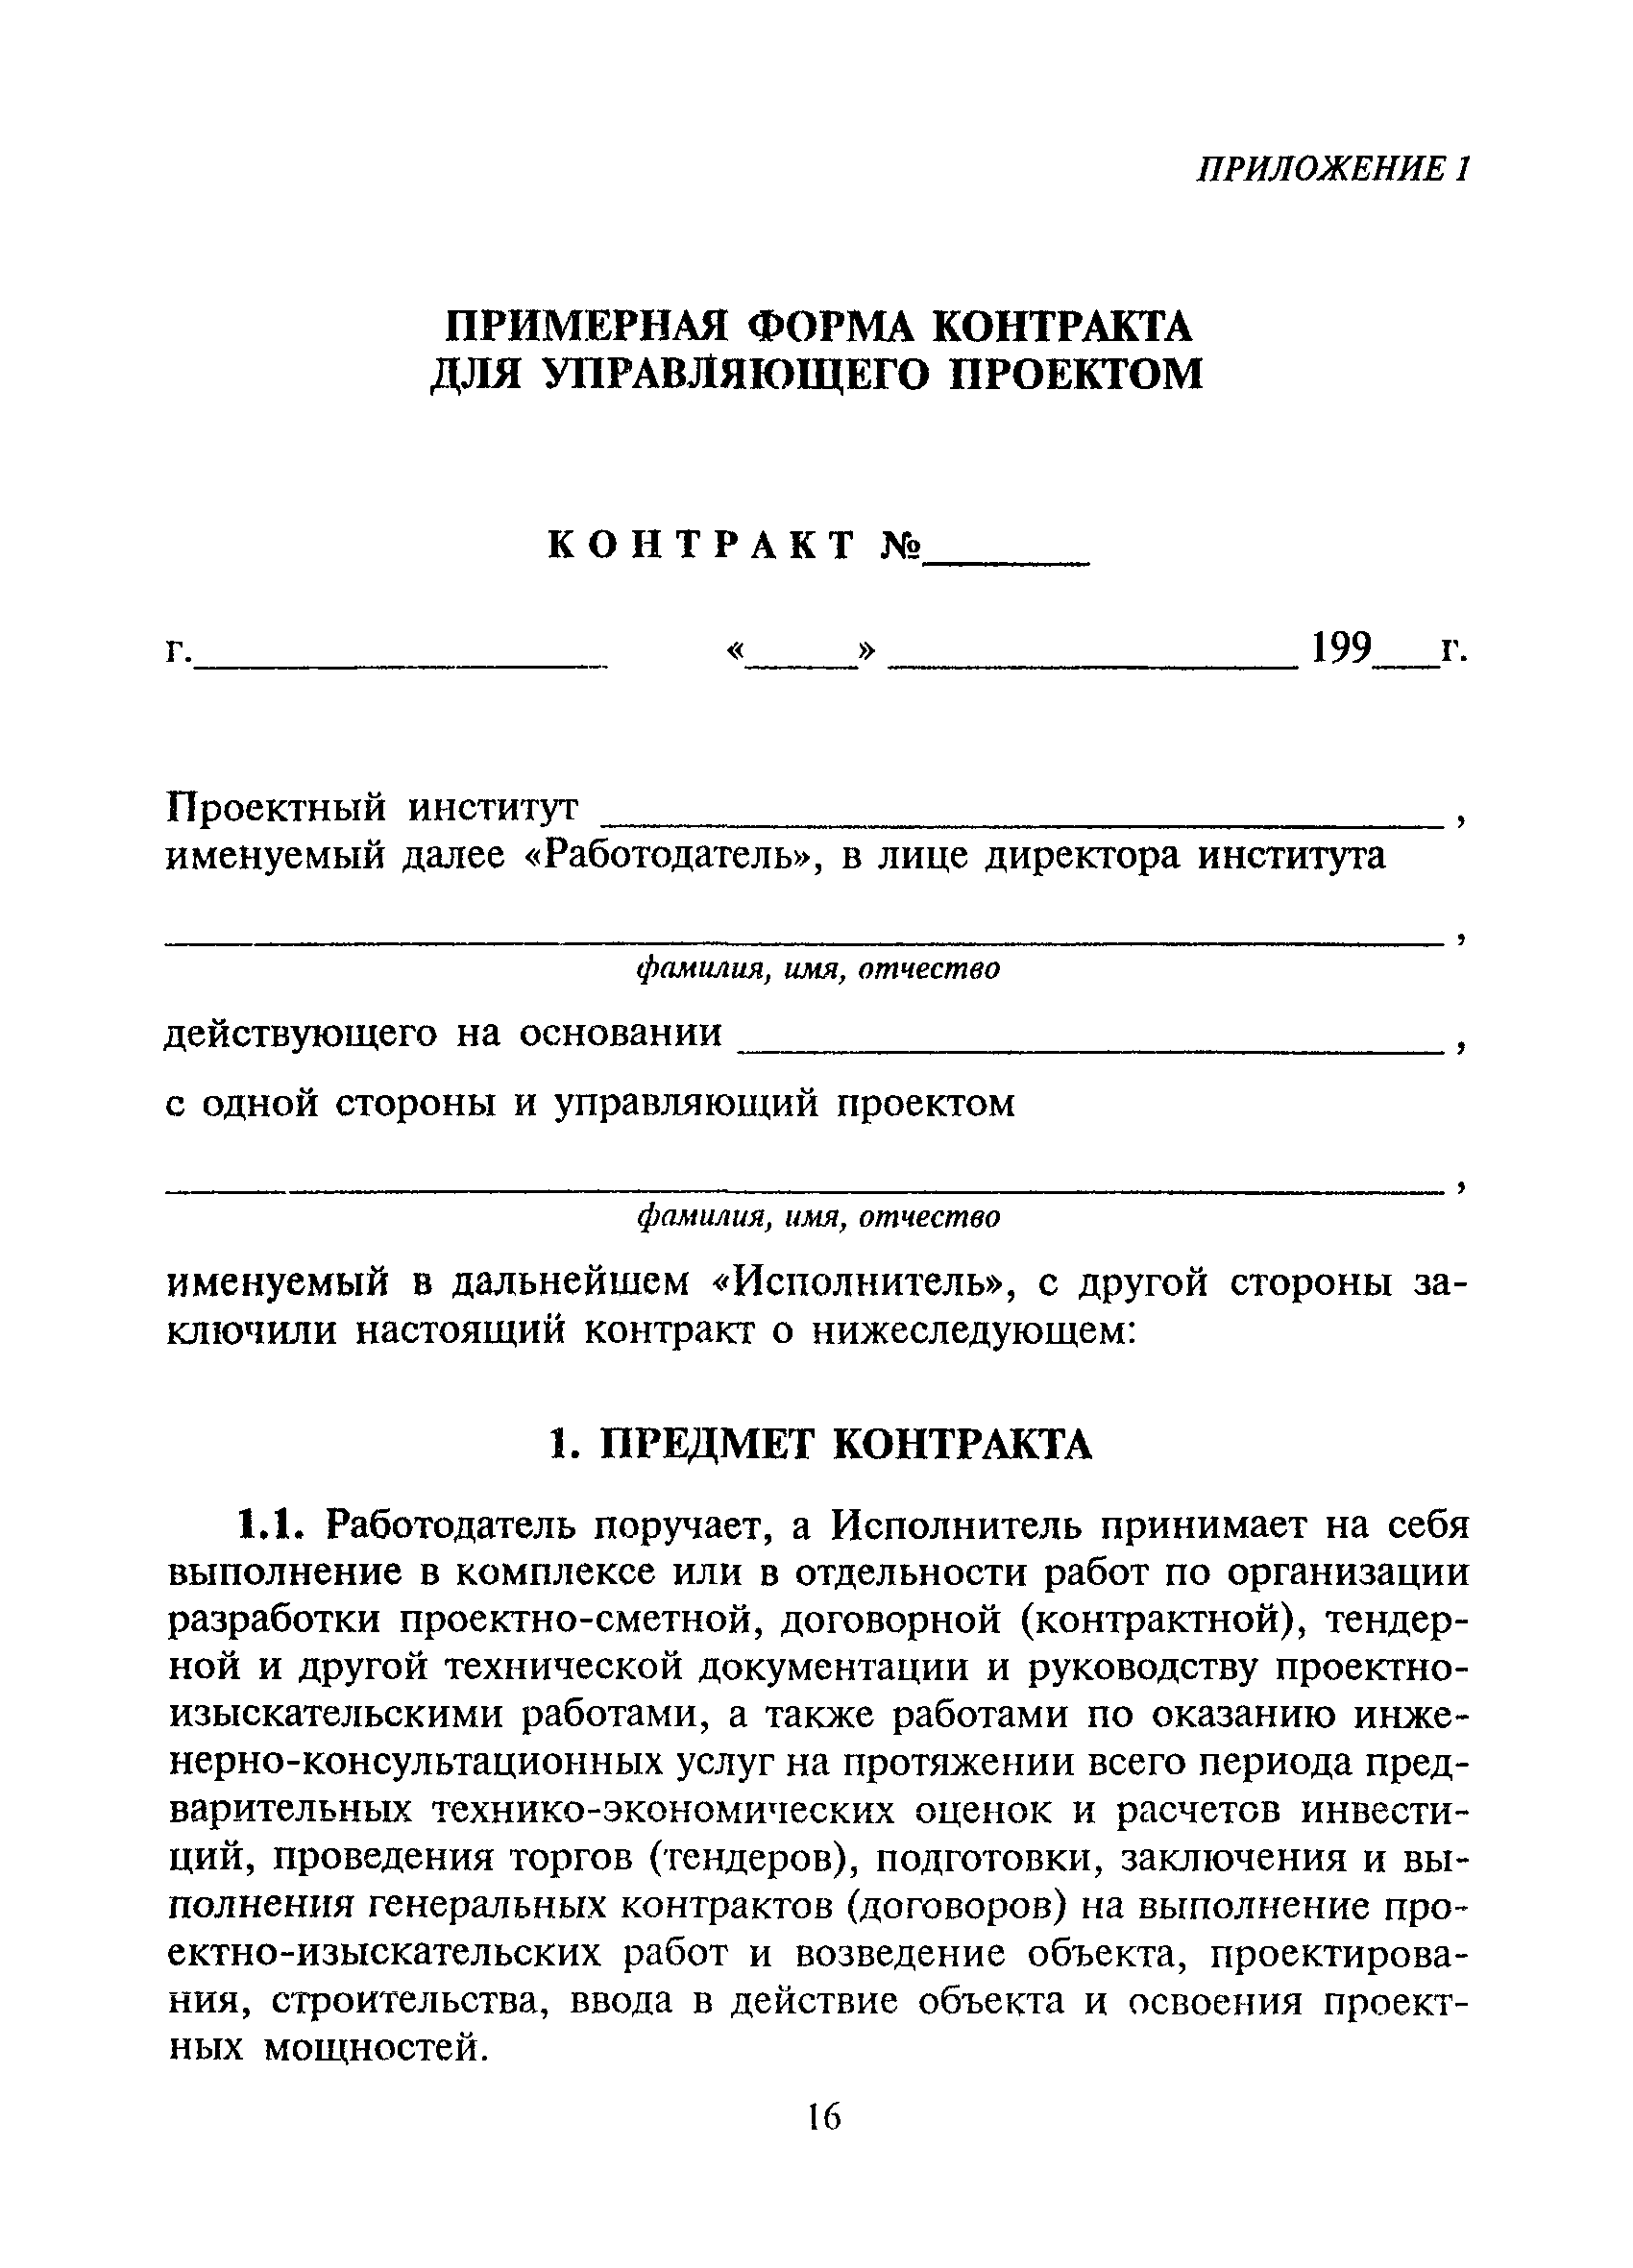 МДС 11-11.2000